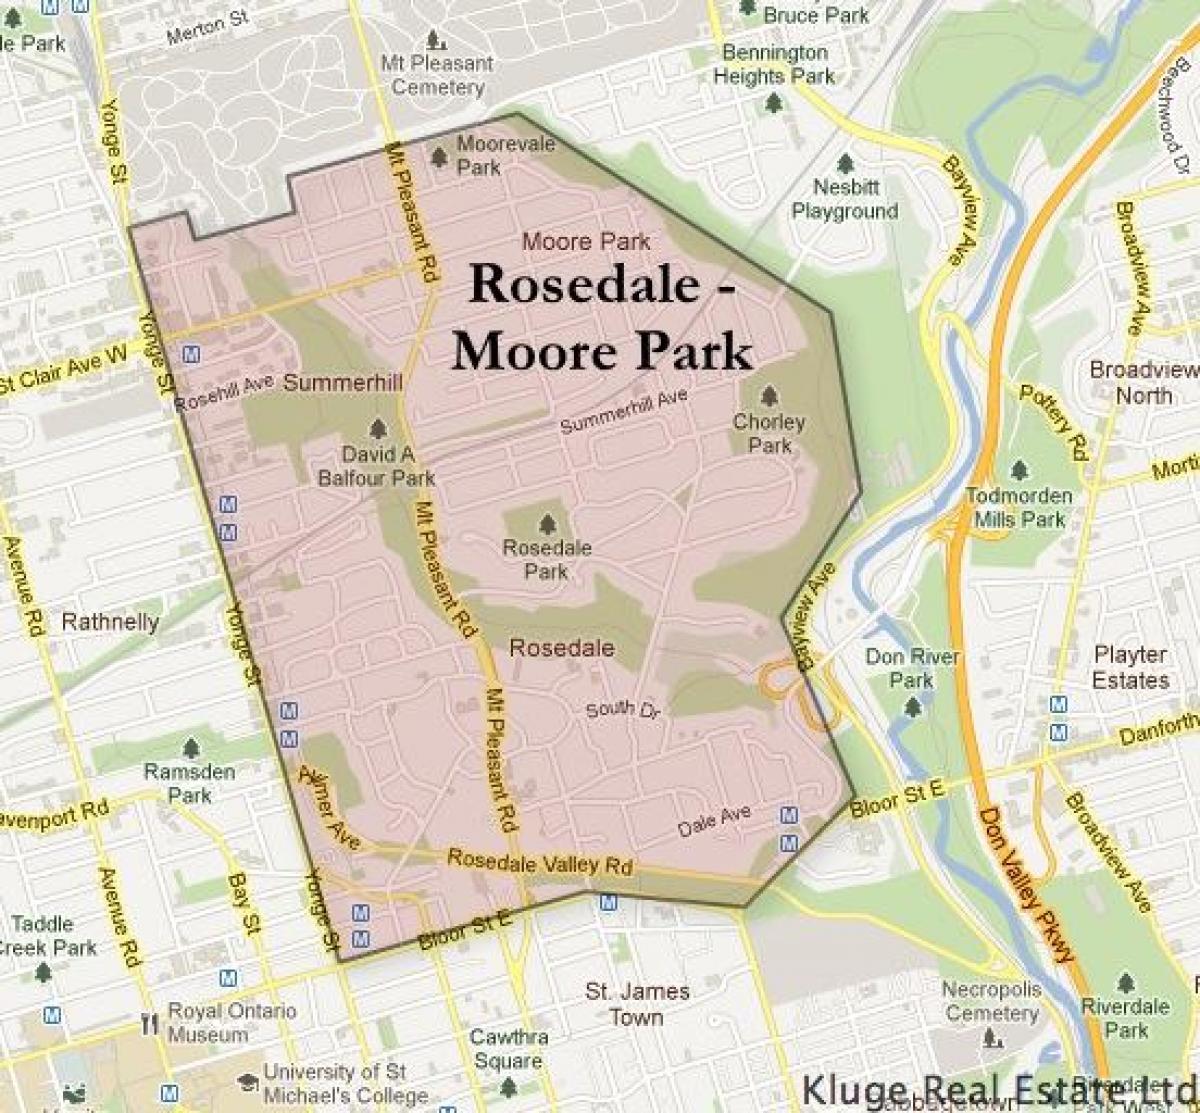 แผนที่ของ Rosedale มัวร์สวนโตรอนโต